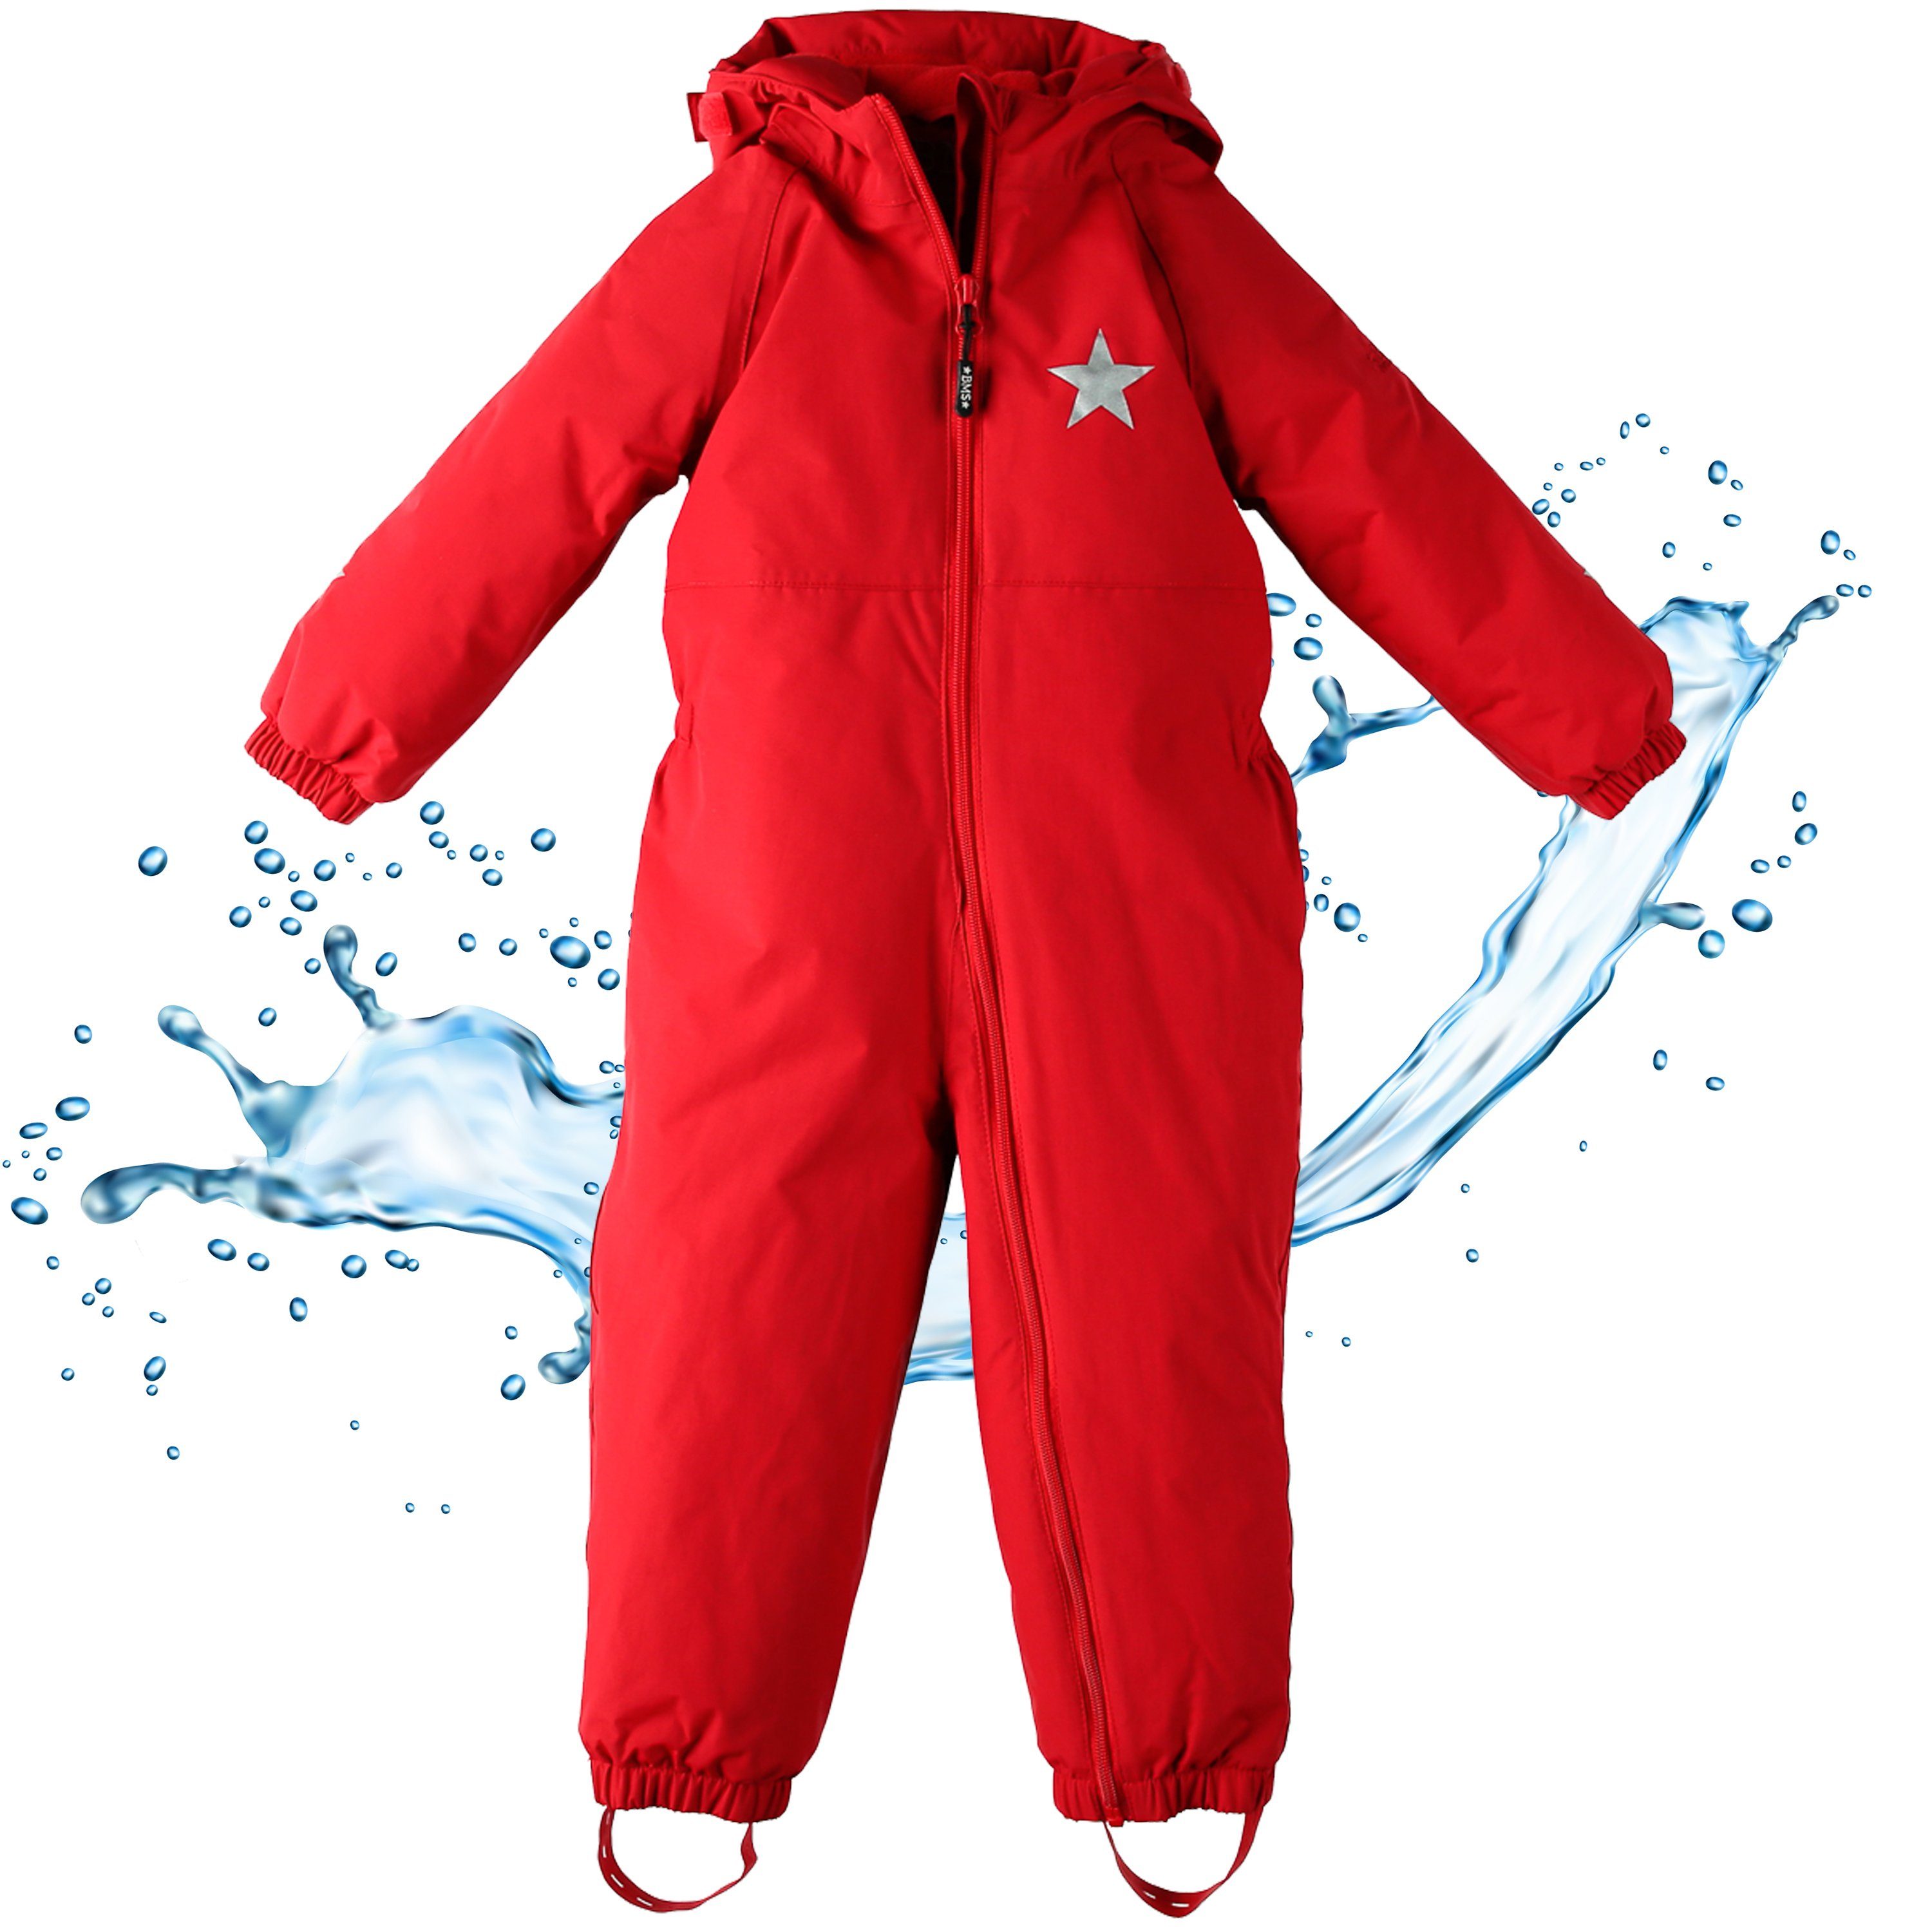 BMS Regenoverall Regenanzug für Kinder 100% wasserdicht & atmungsaktiv - PFC frei im praktischen Design rot